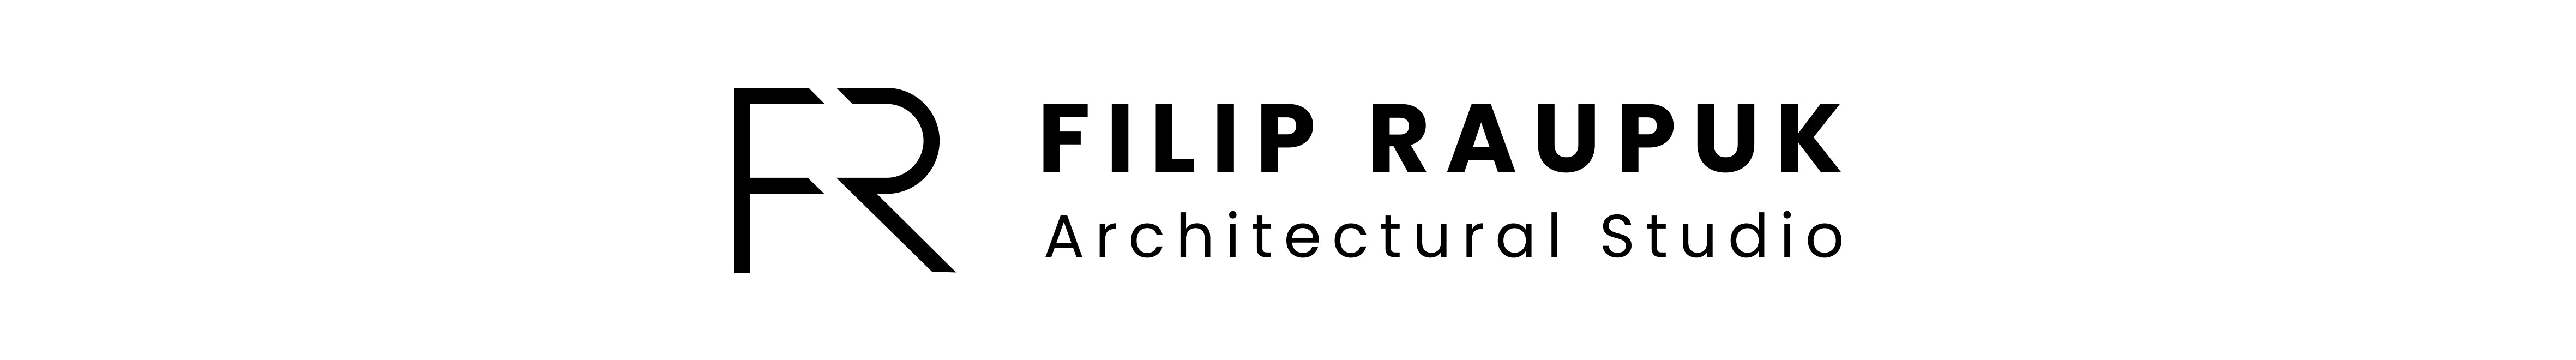 Filip Raupuk's profile banner